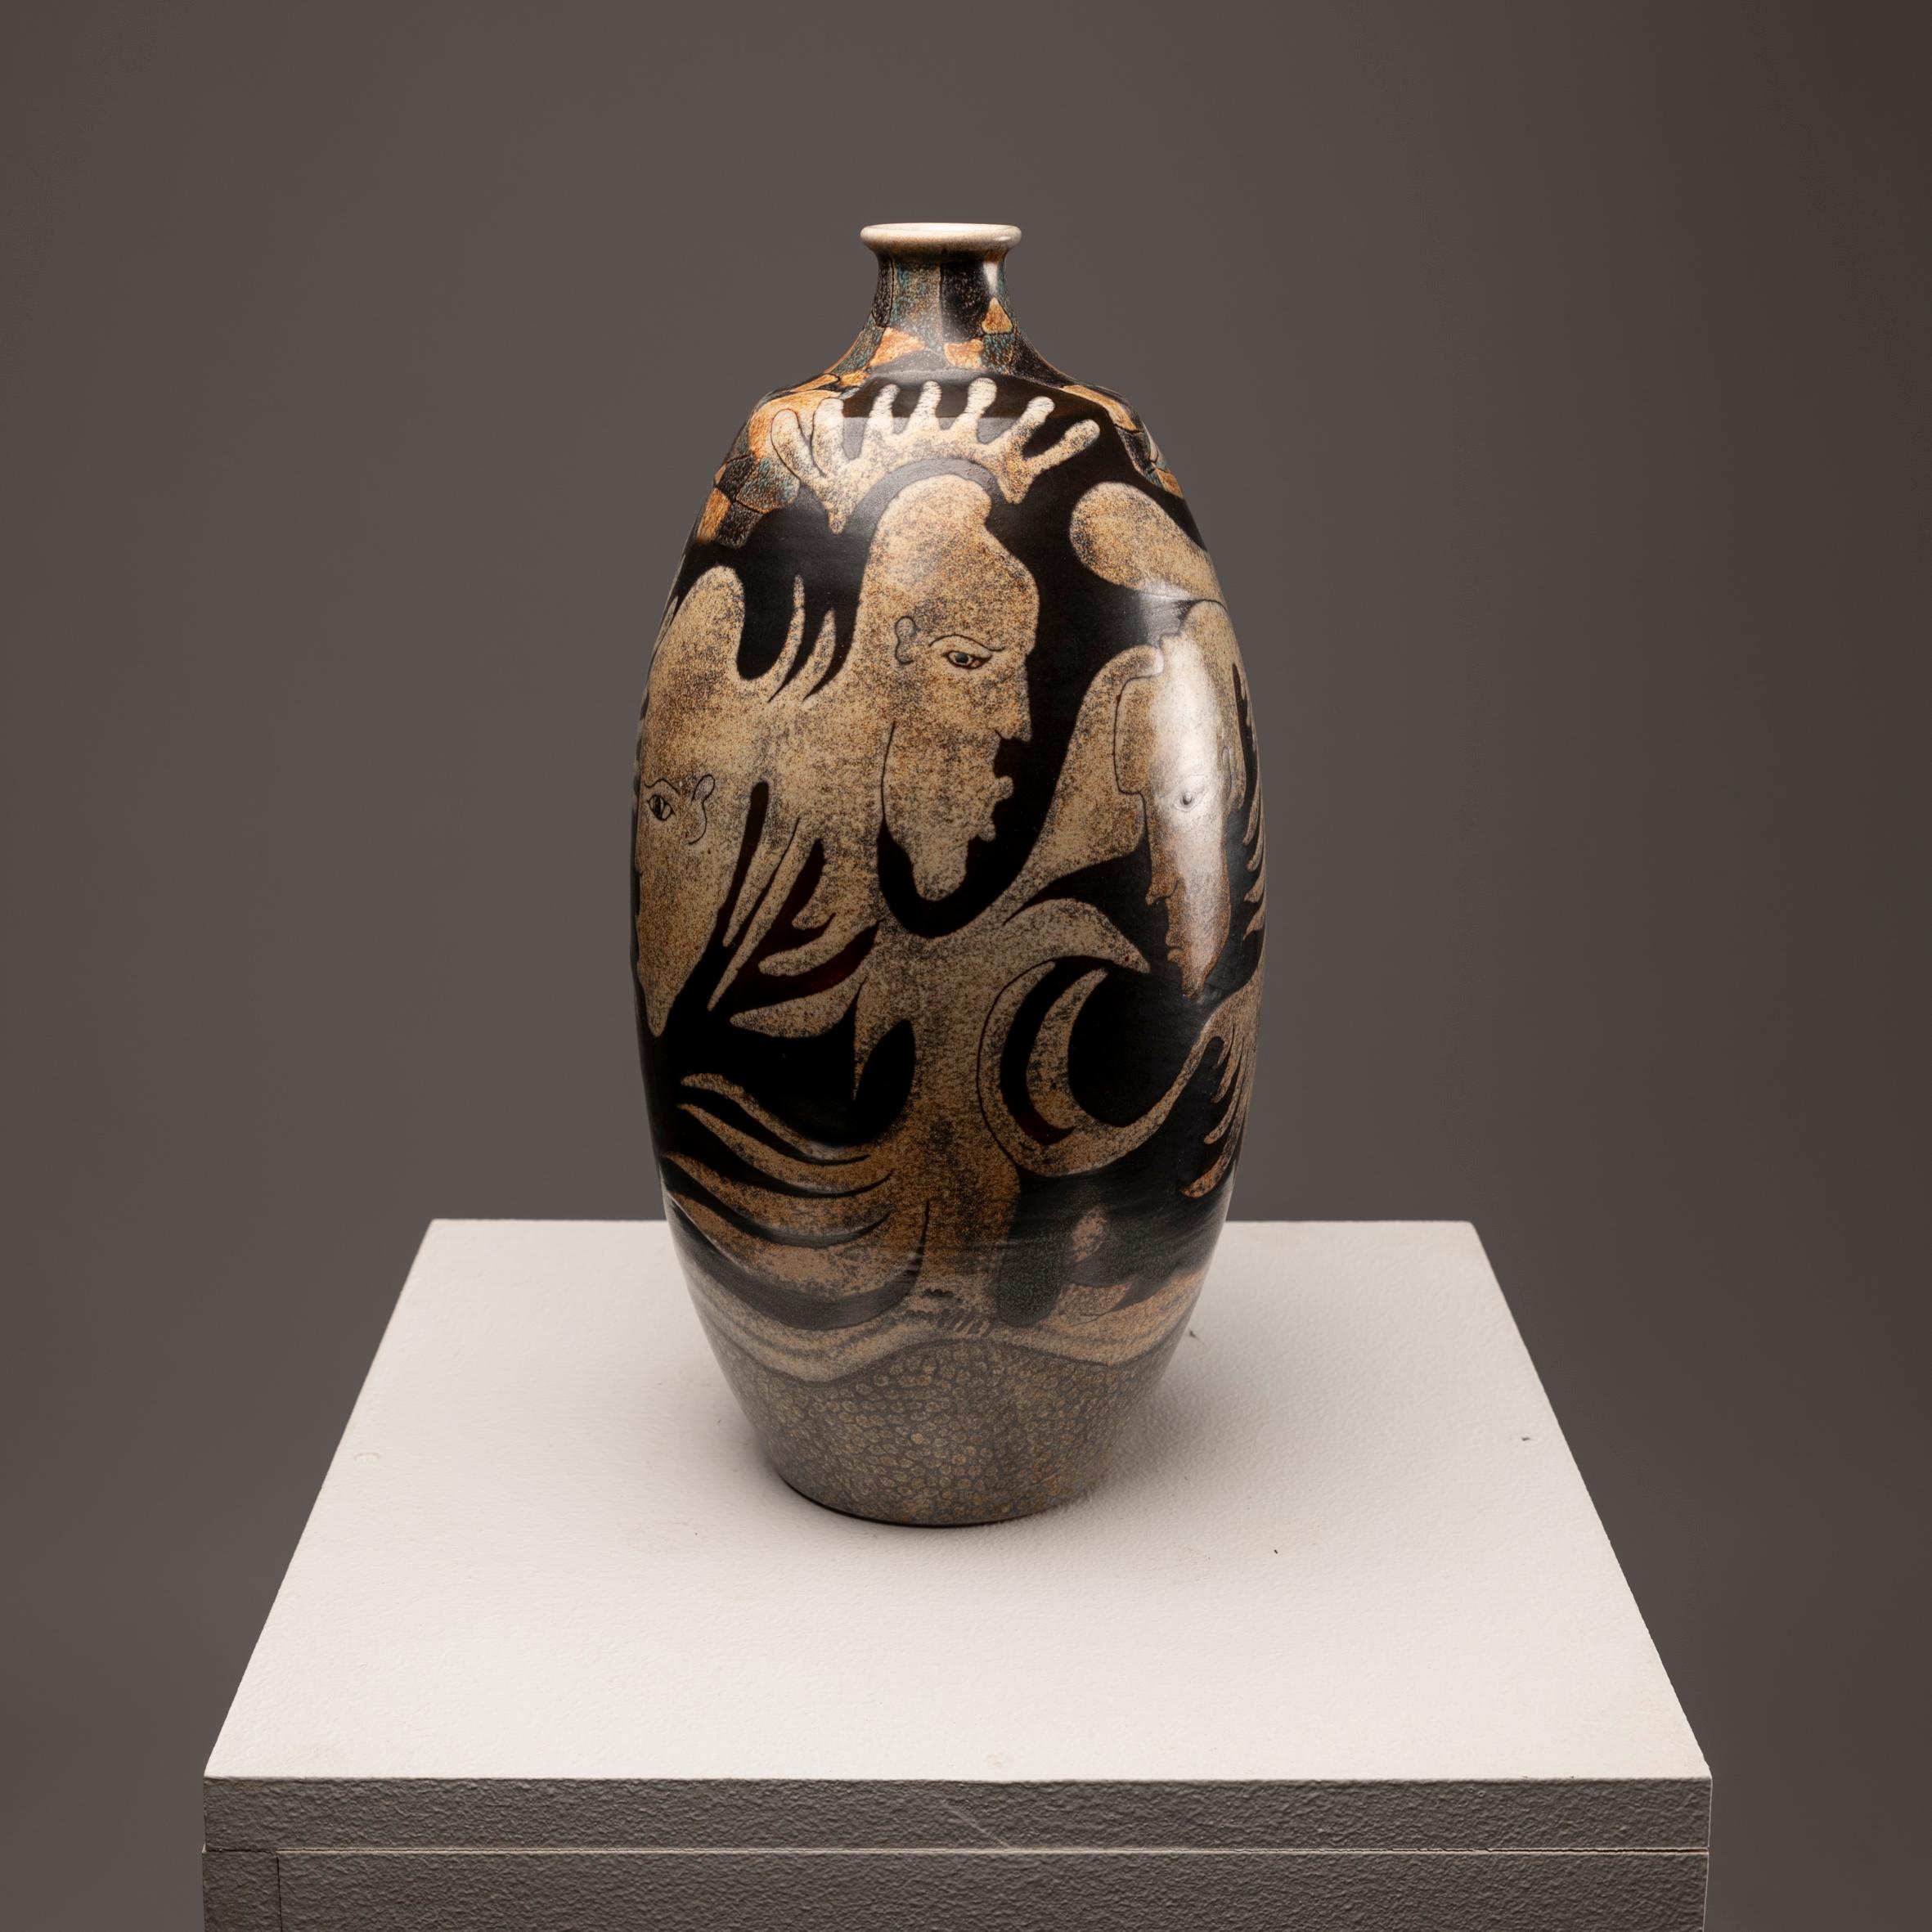 Investir dans ce vase en céramique émaillée signé par M. Millet, datant des années 1980, représente une occasion unique de posséder une pièce d'expression artistique unique. Réalisé avec habileté et créativité, ce vase témoigne du talent et de la